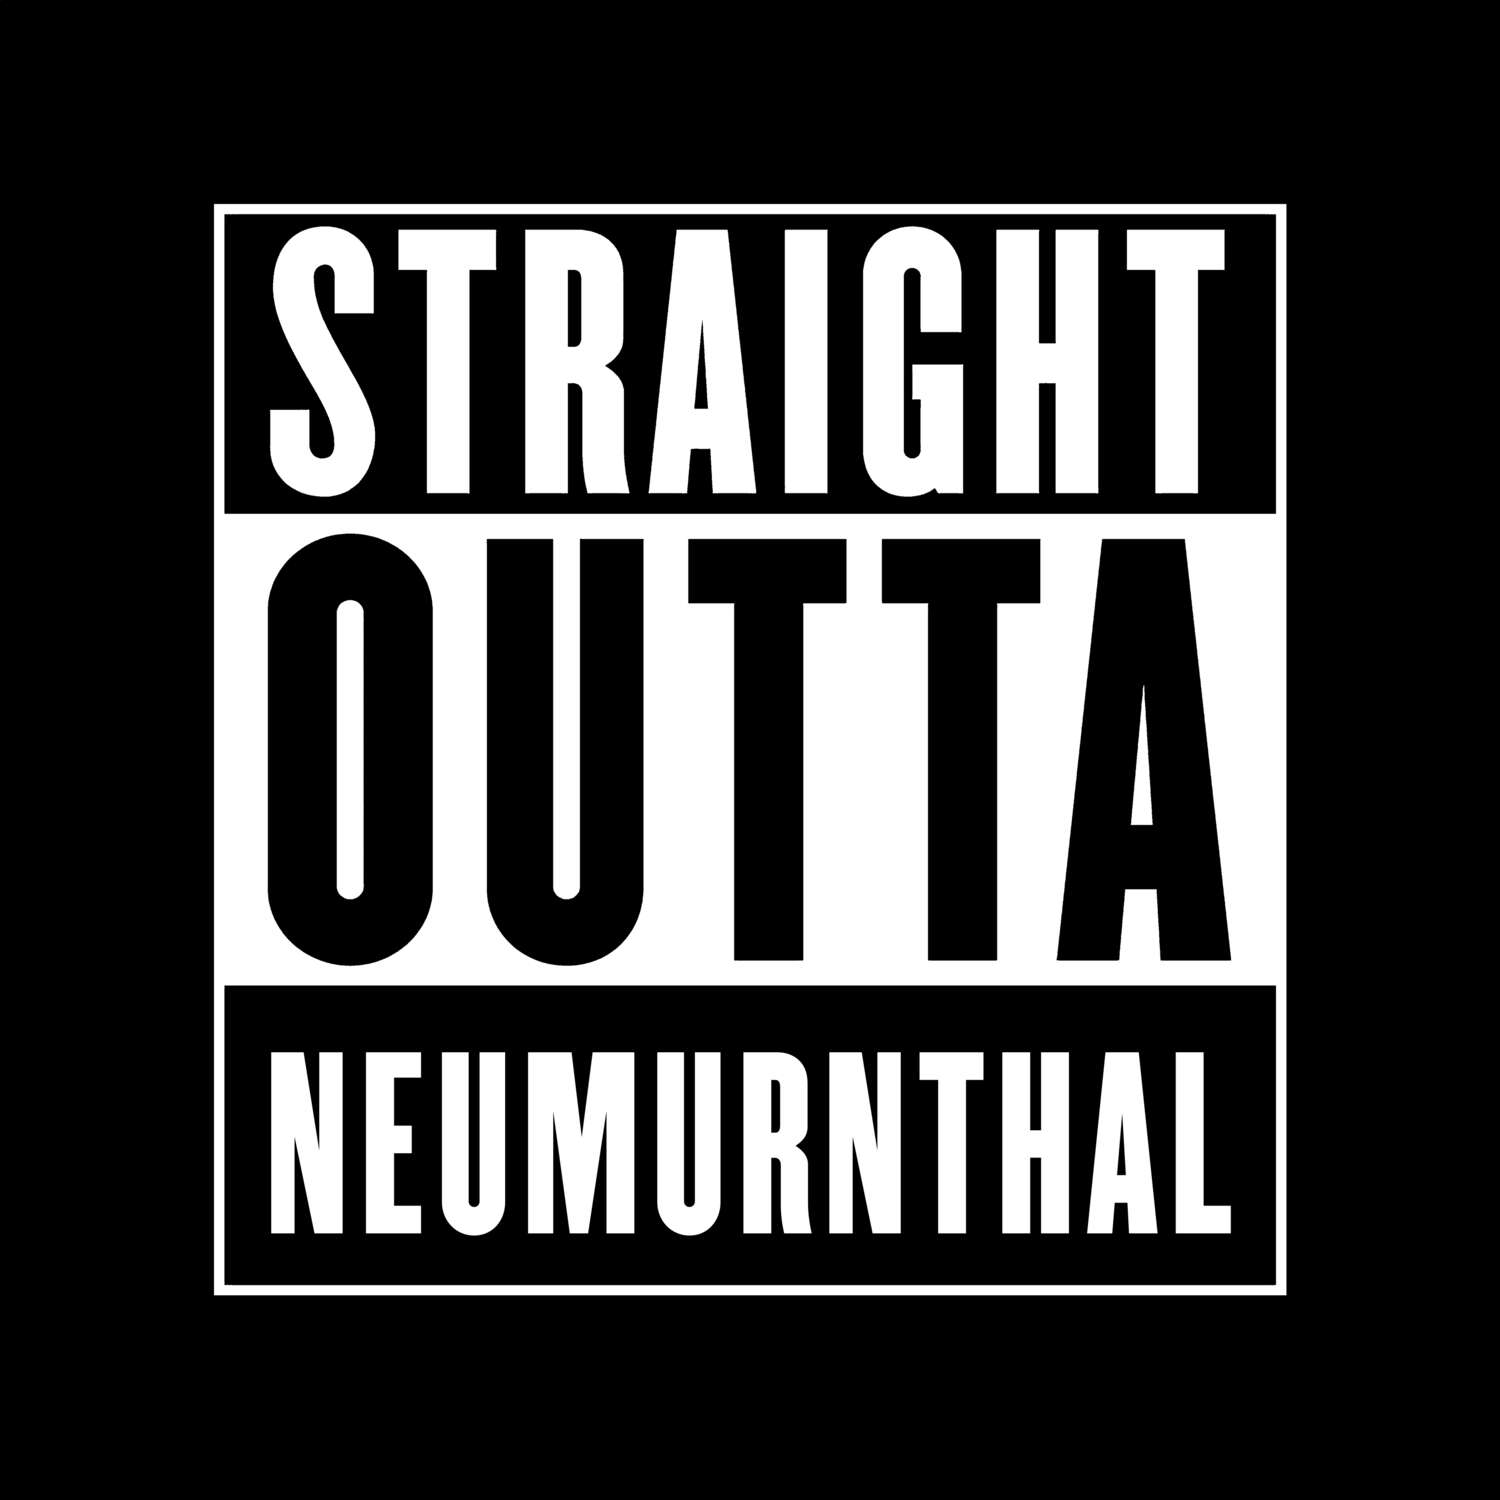 Neumurnthal T-Shirt »Straight Outta«